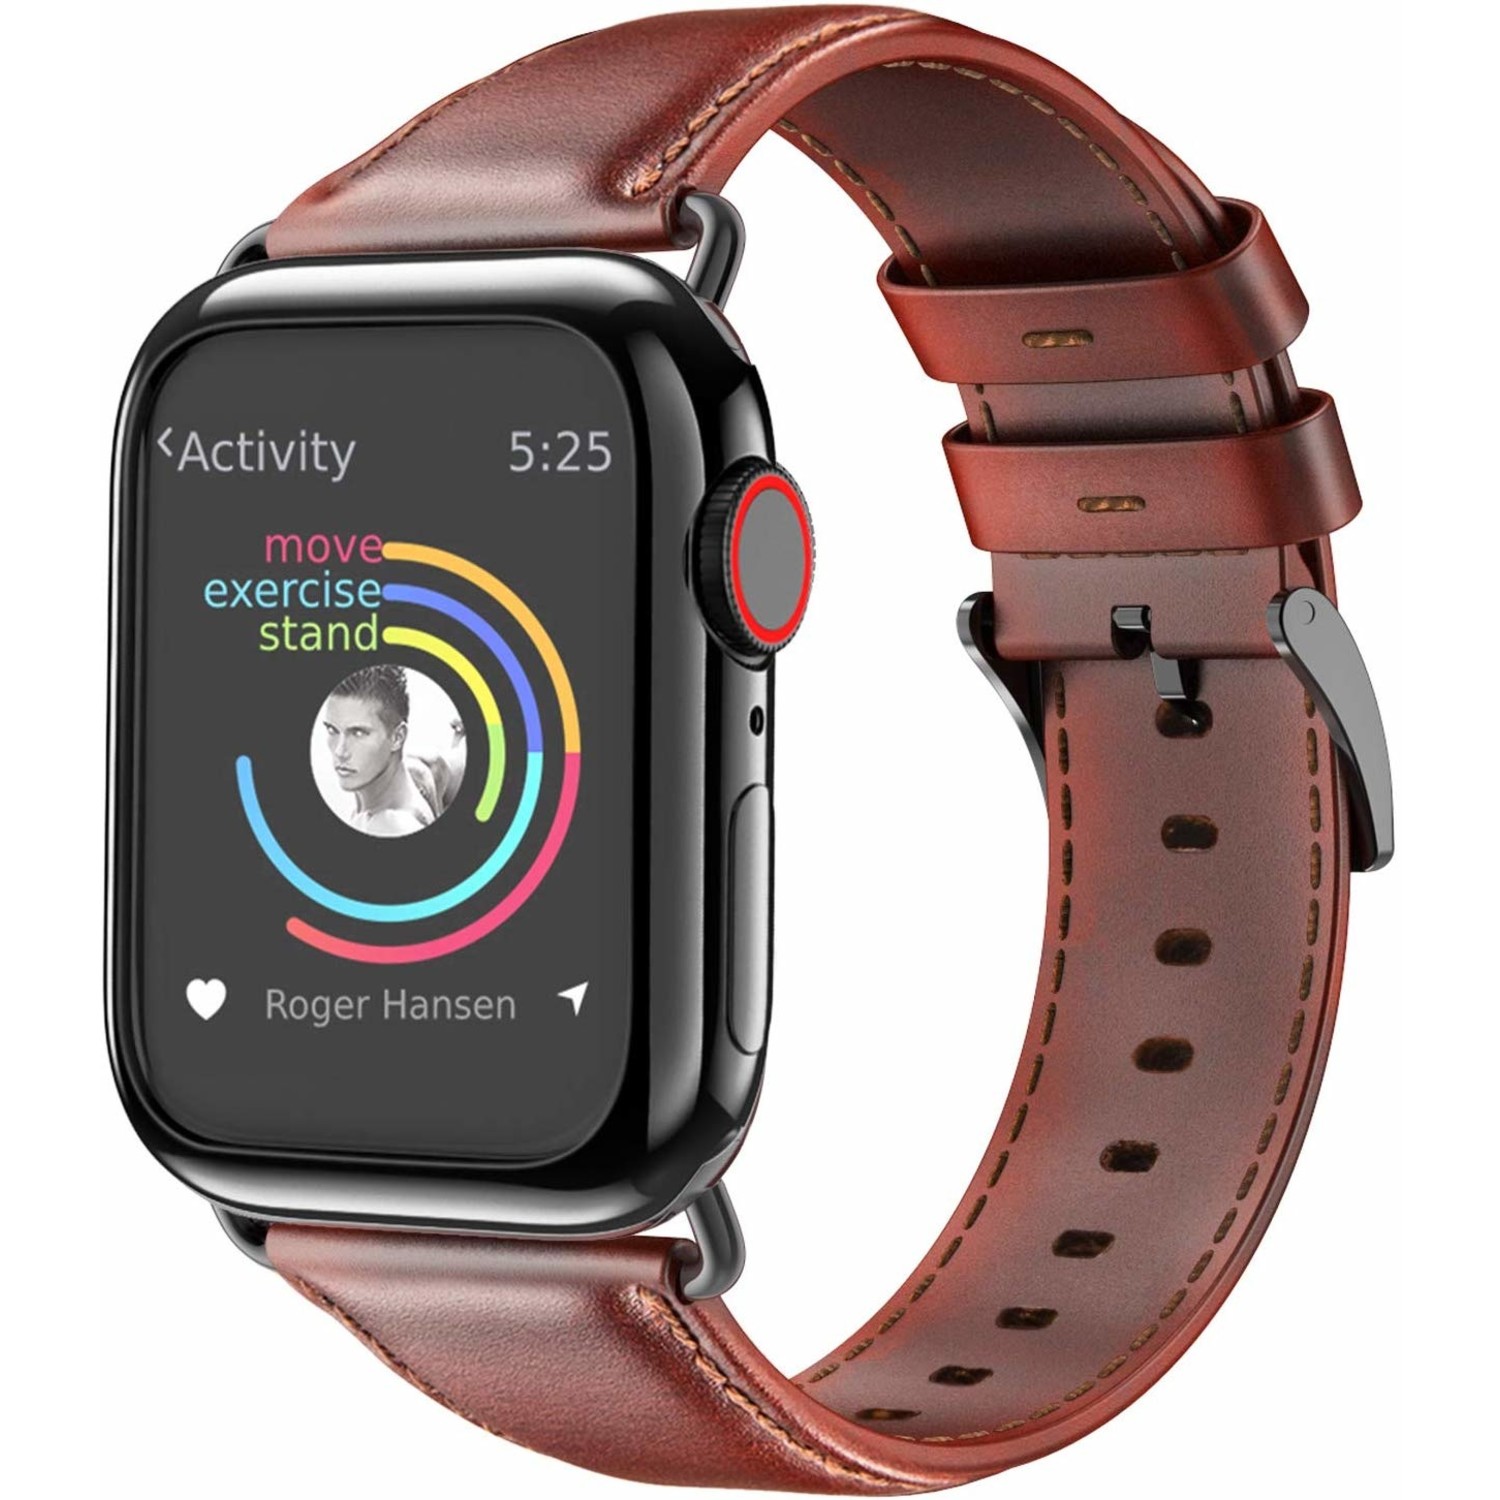 Sympton onbetaald Rouwen Apple Watch leren band (rood-bruin) - Smartwatchbanden.nl